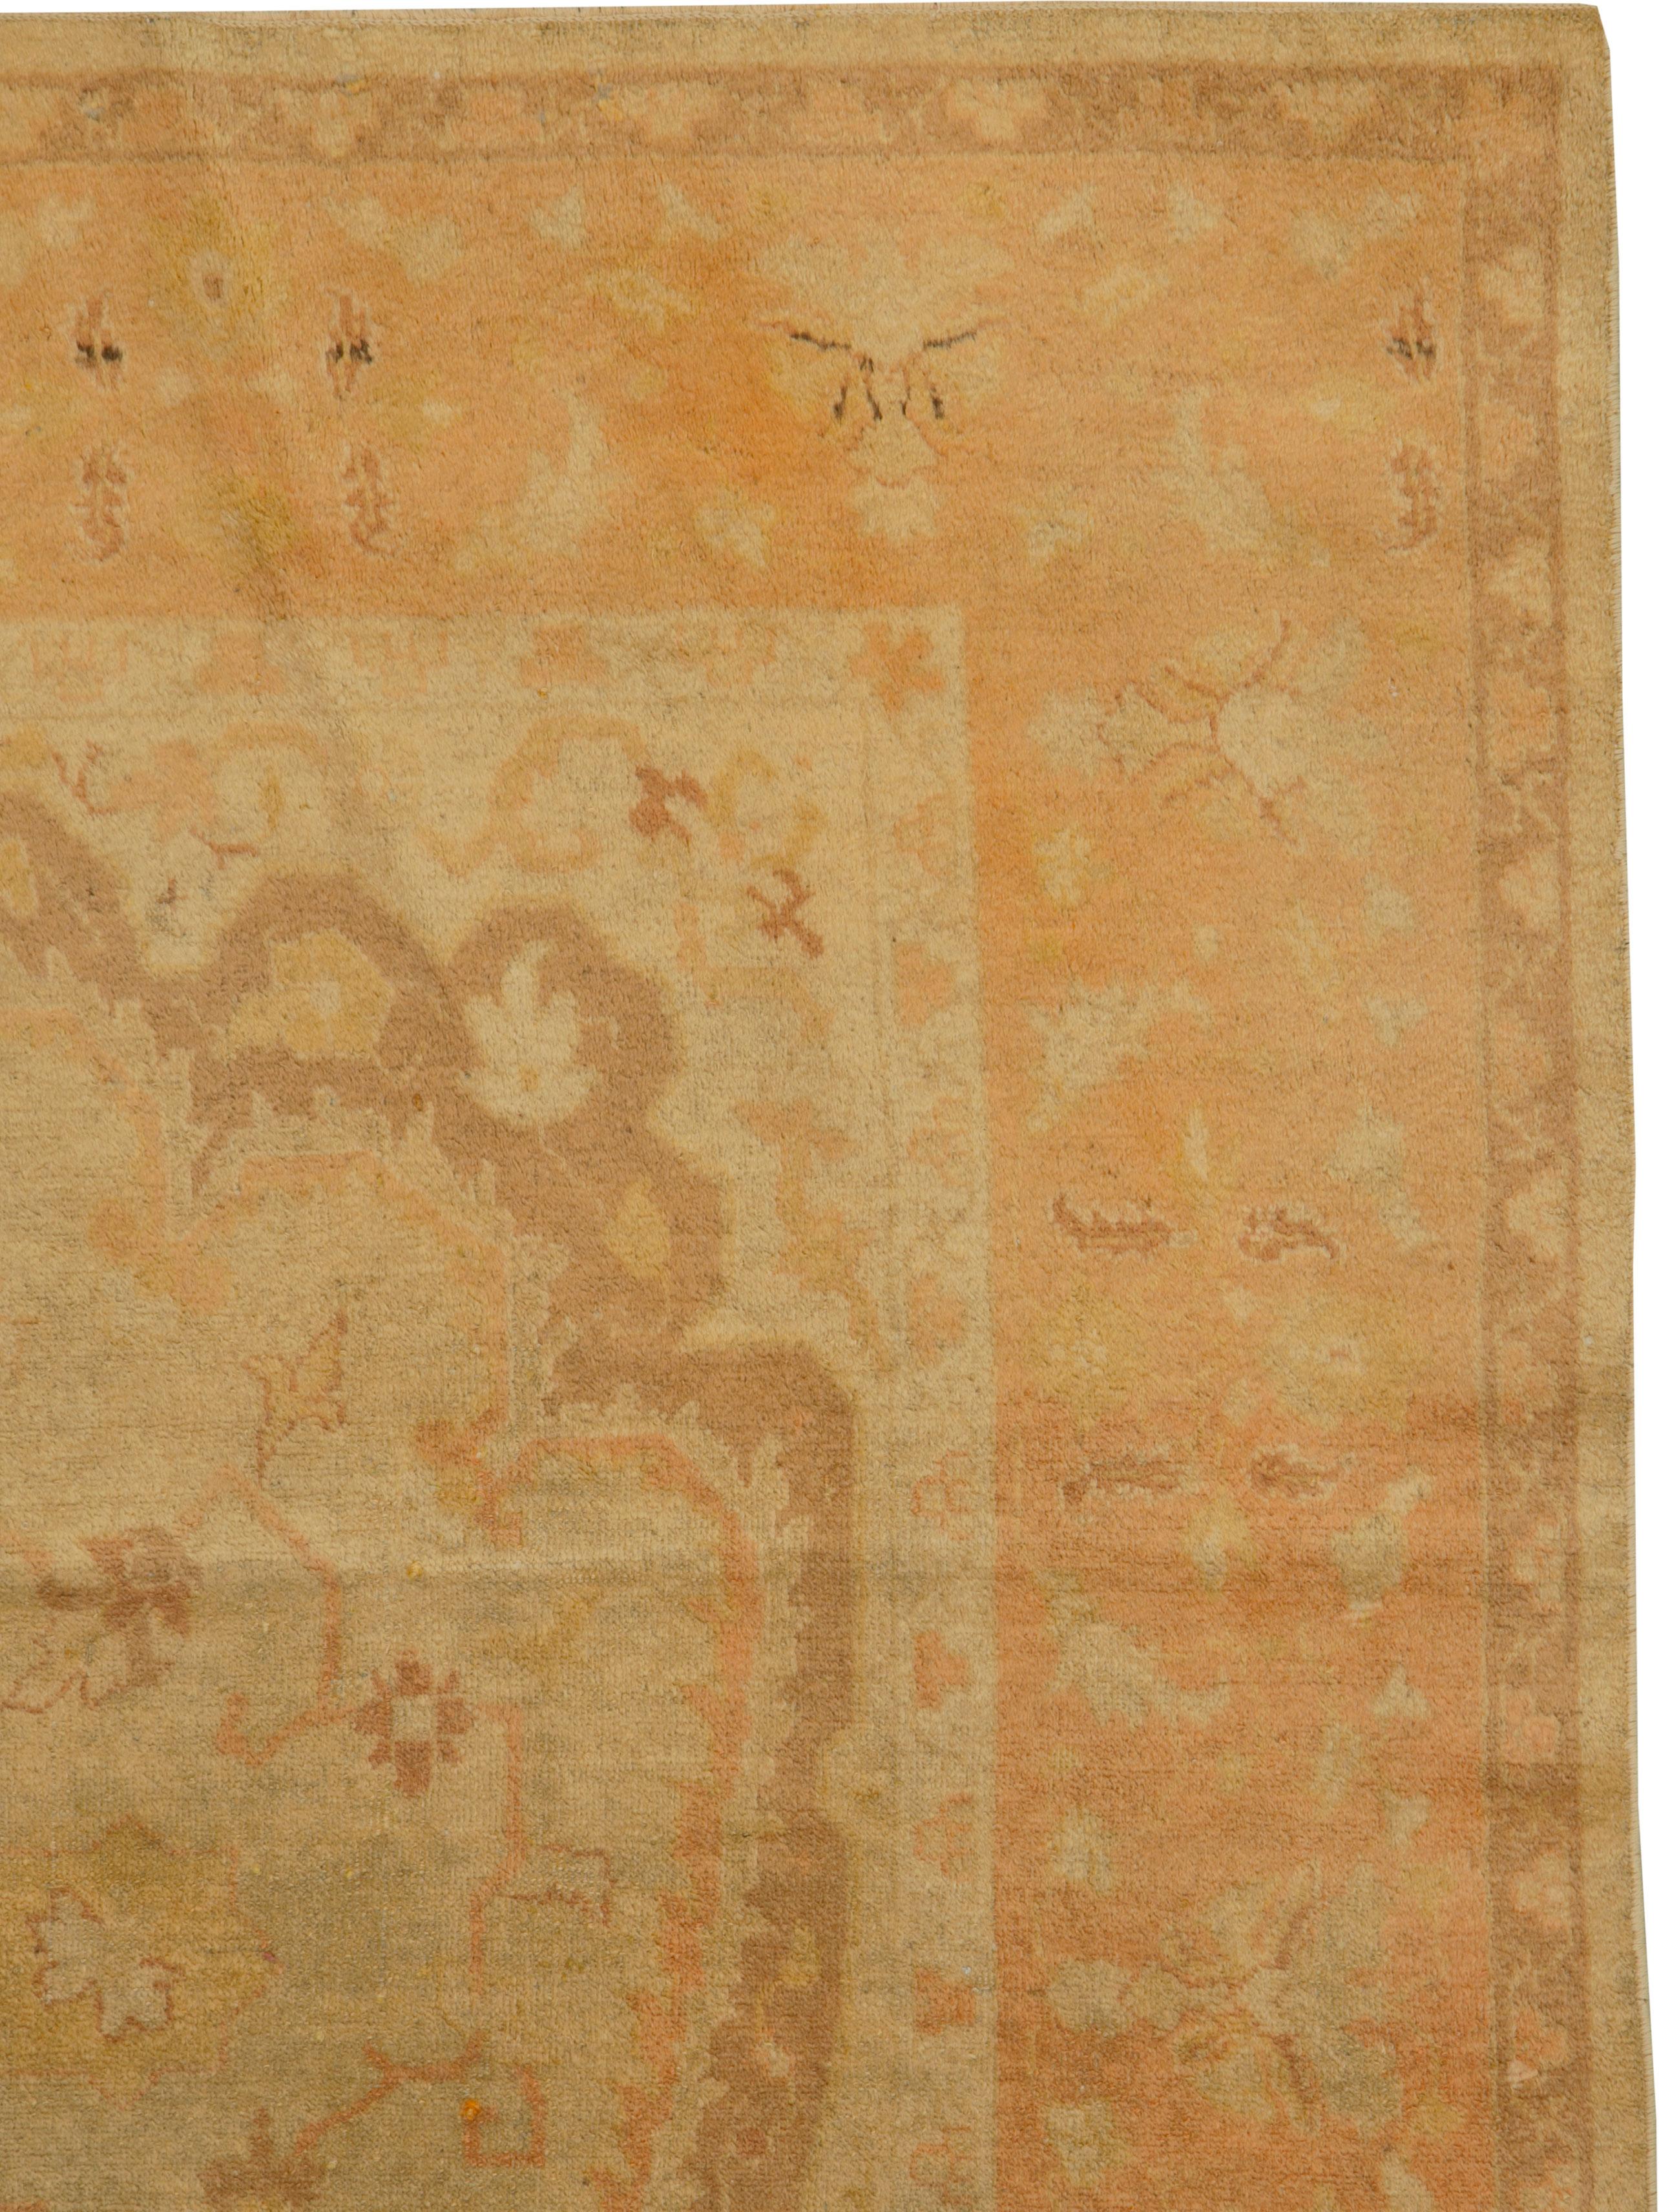 Ein alter indischer Amritsar-Teppich aus der Mitte des 20. Jahrhunderts.

Maße: 5' 6